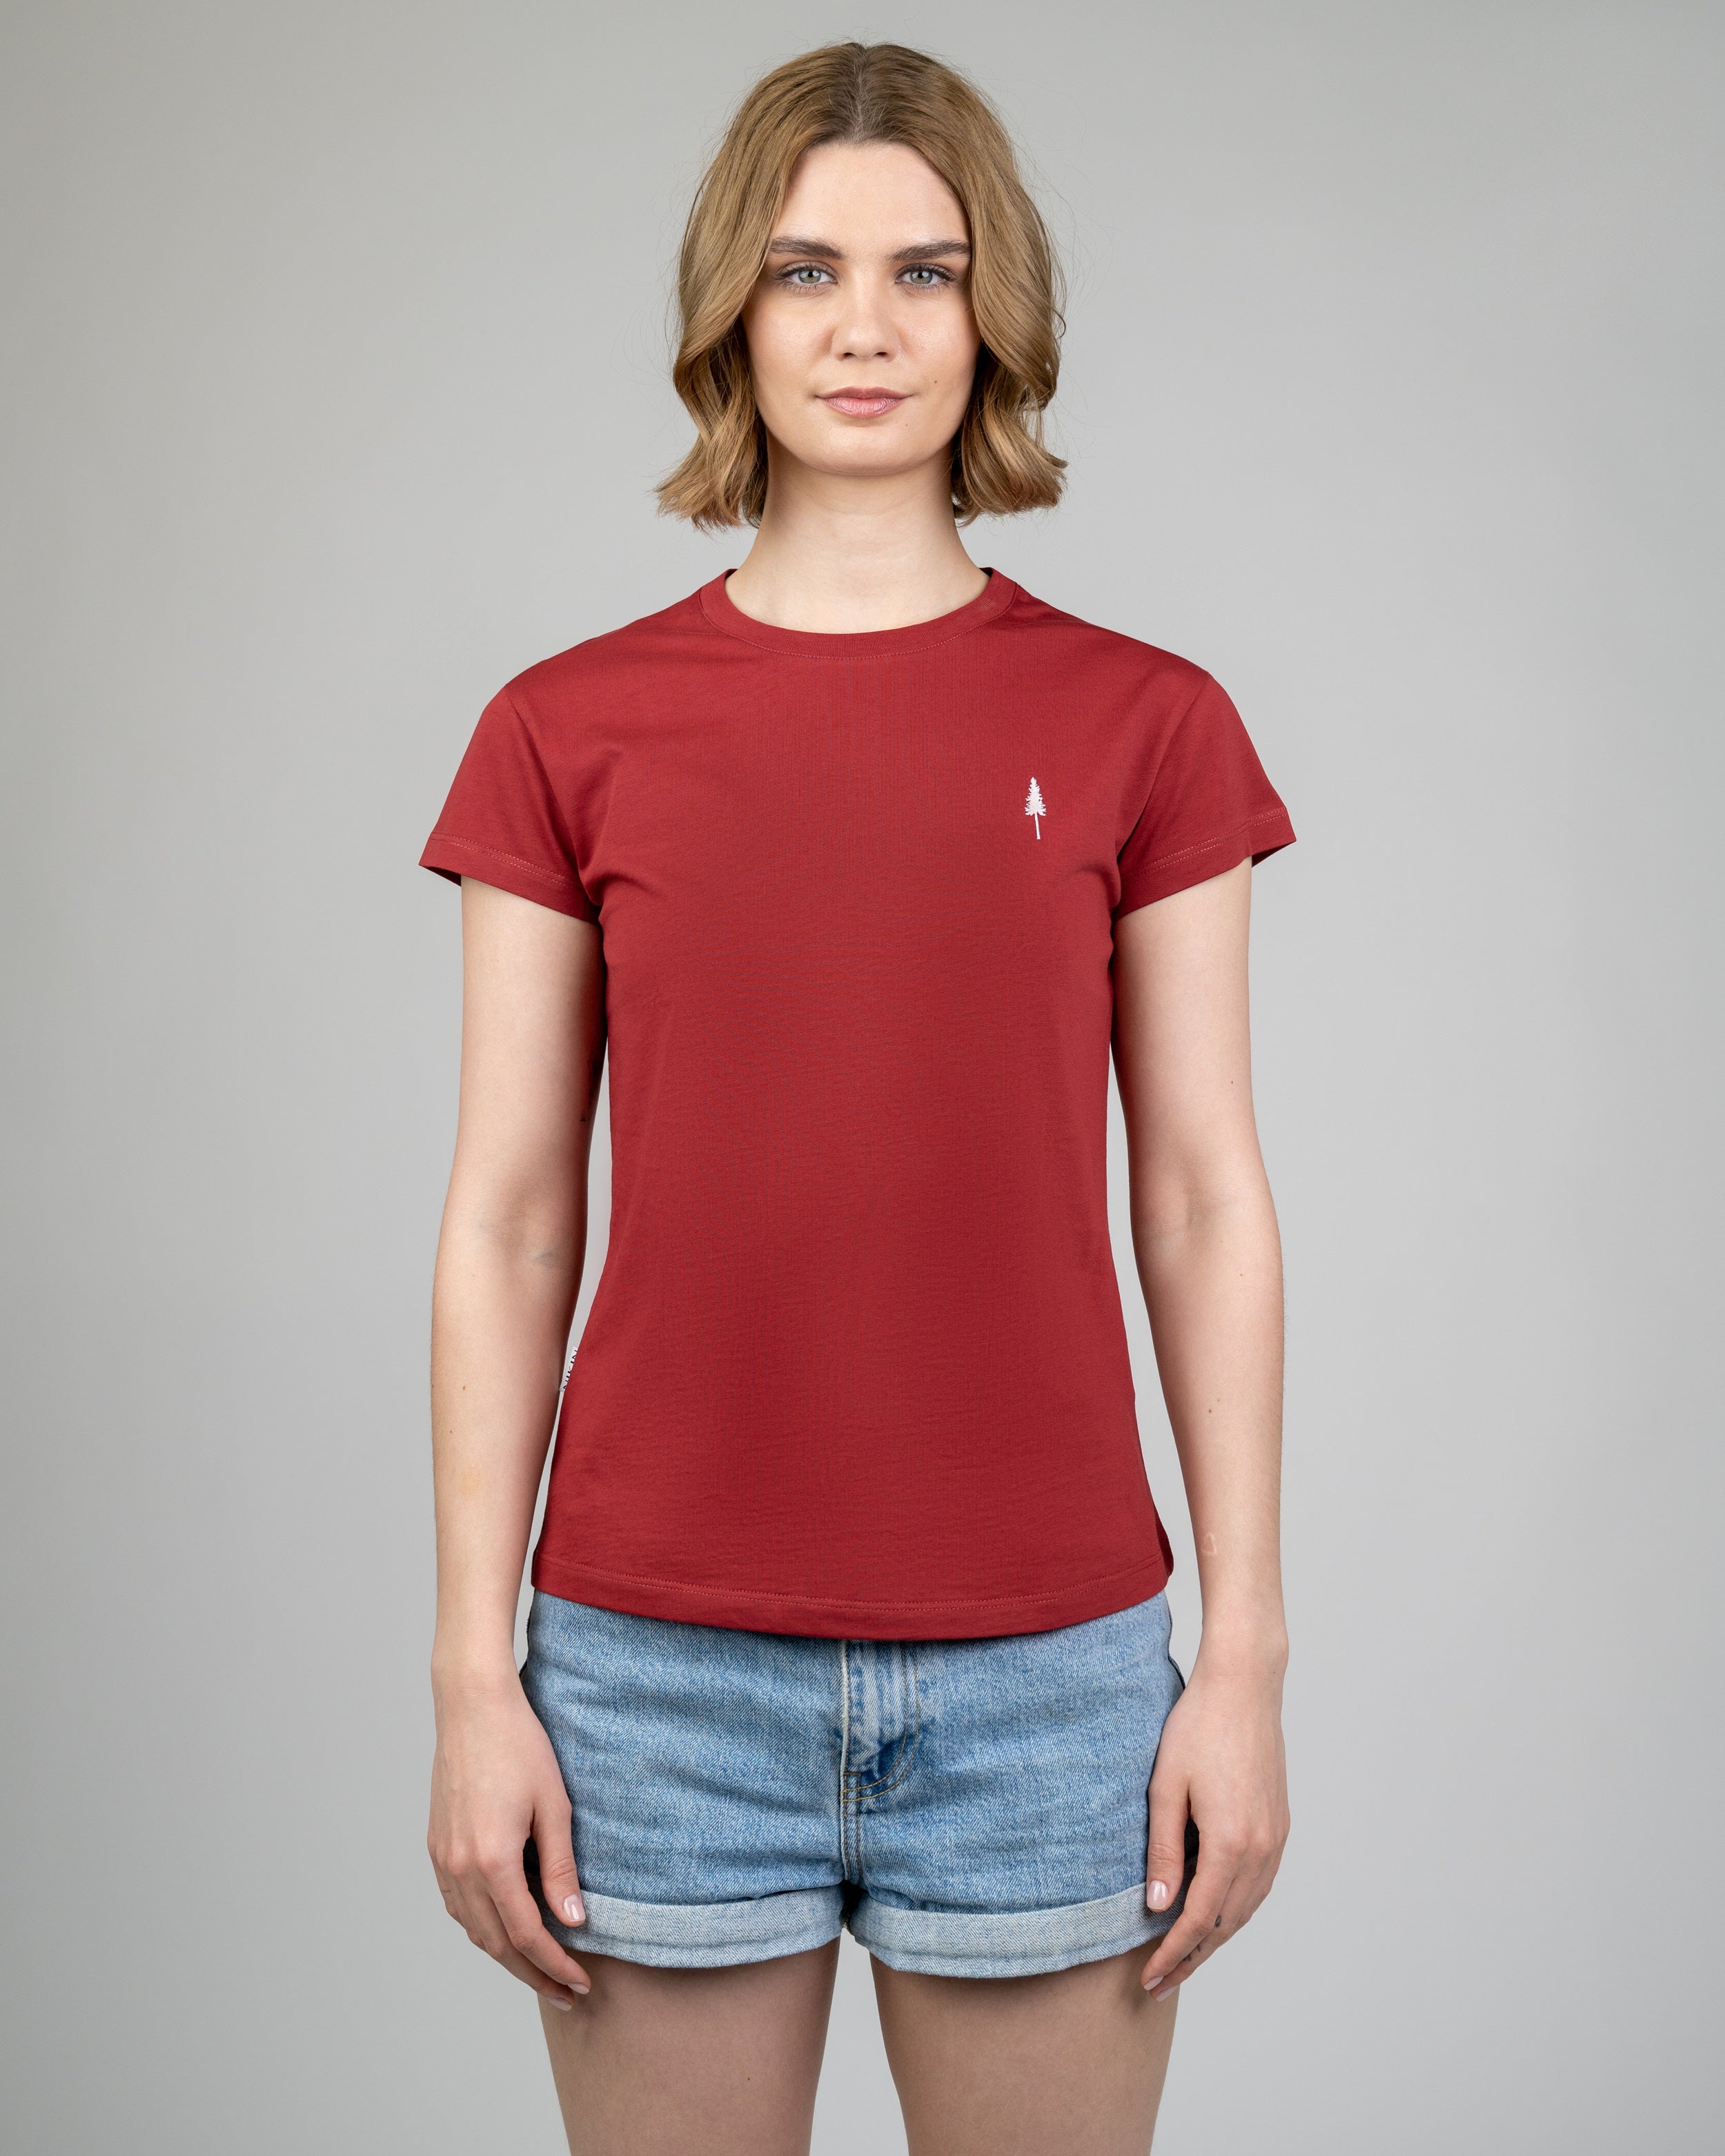 Women's organic cotton T-shirt Treeshirt Red